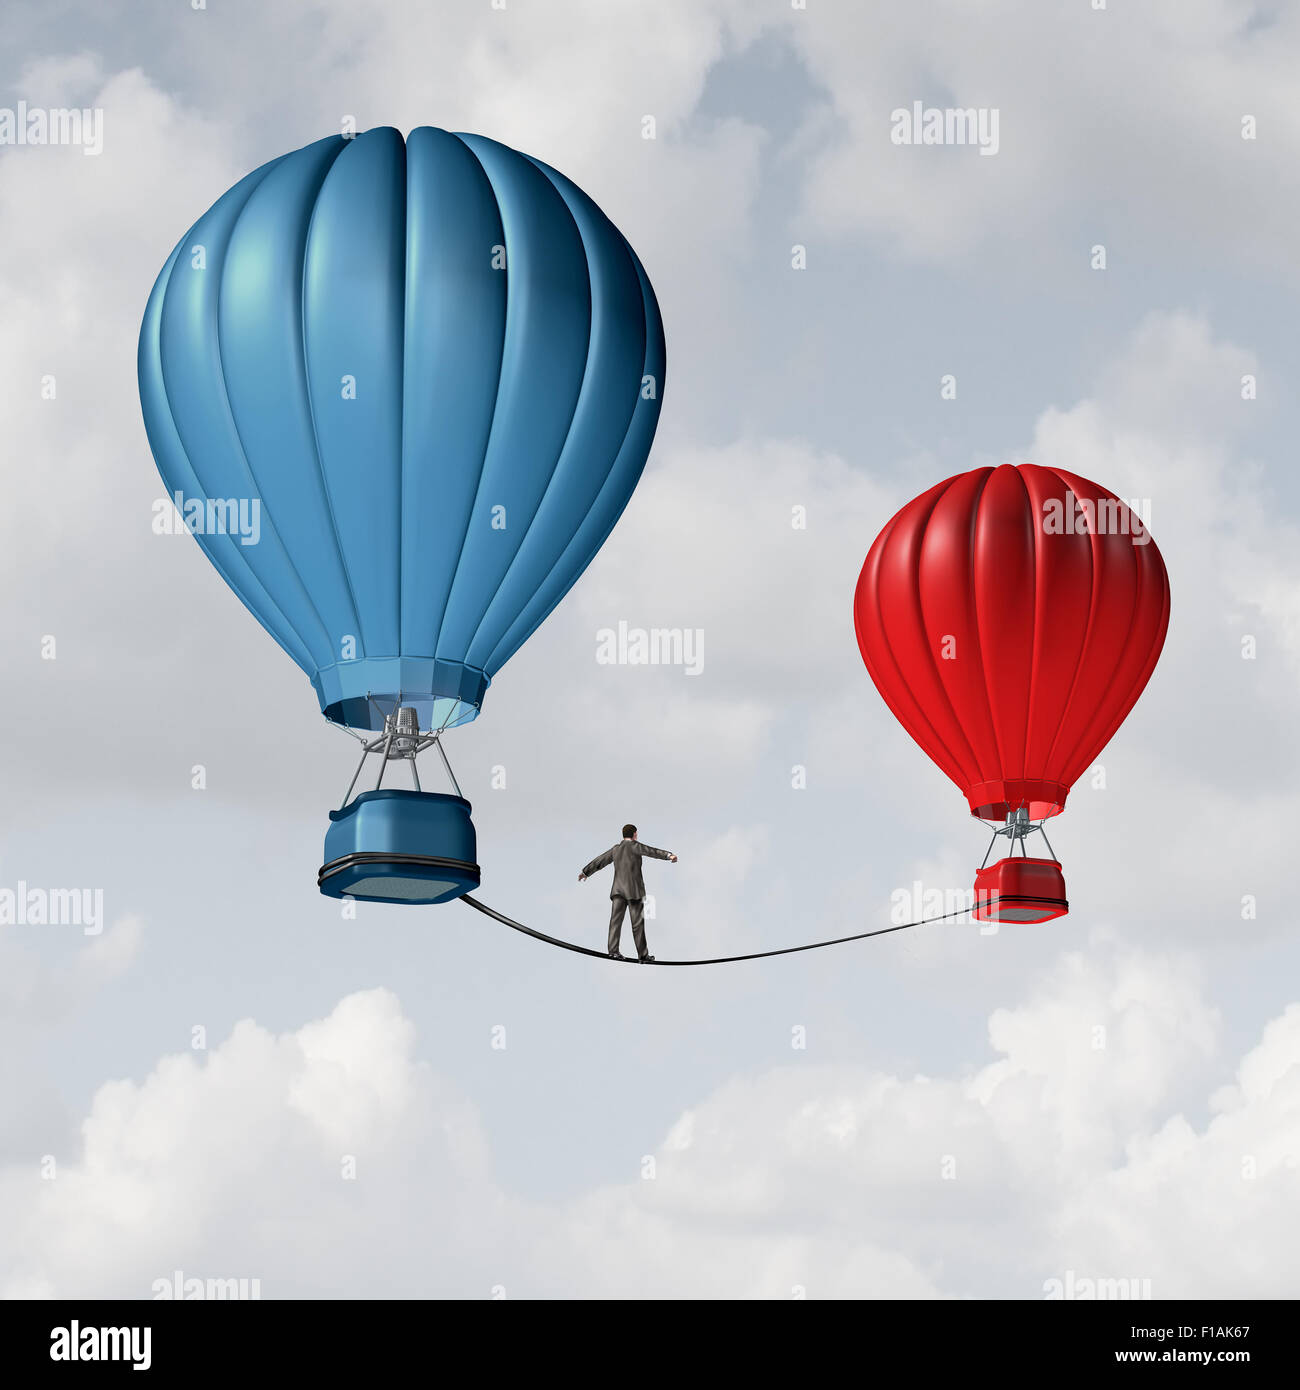 Herausforderung und Vorsicht motivierende Geschäftskonzept als Fußgänger auf dem Hochseil Seil von einem Heißluftballon zu ändern Stockfoto